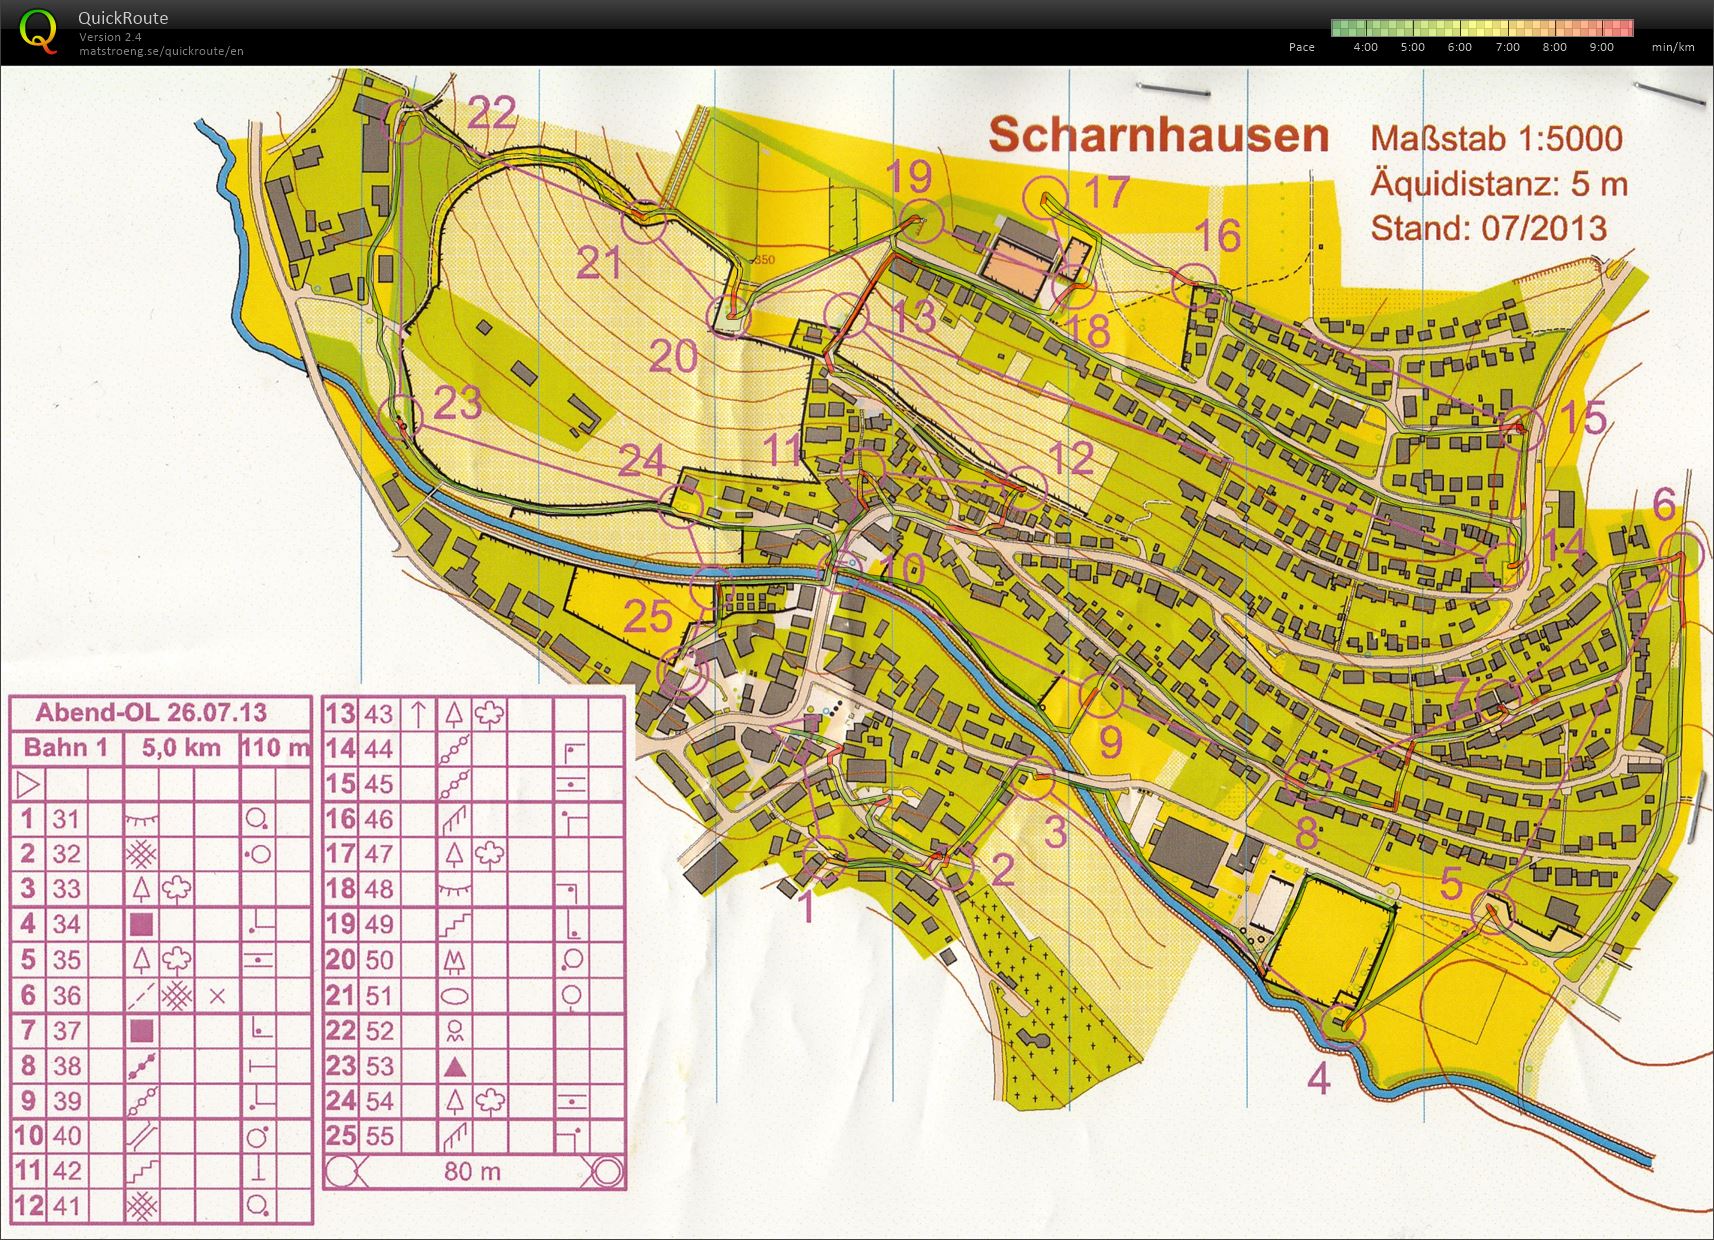 Training Scharnhausen (2013-07-26)